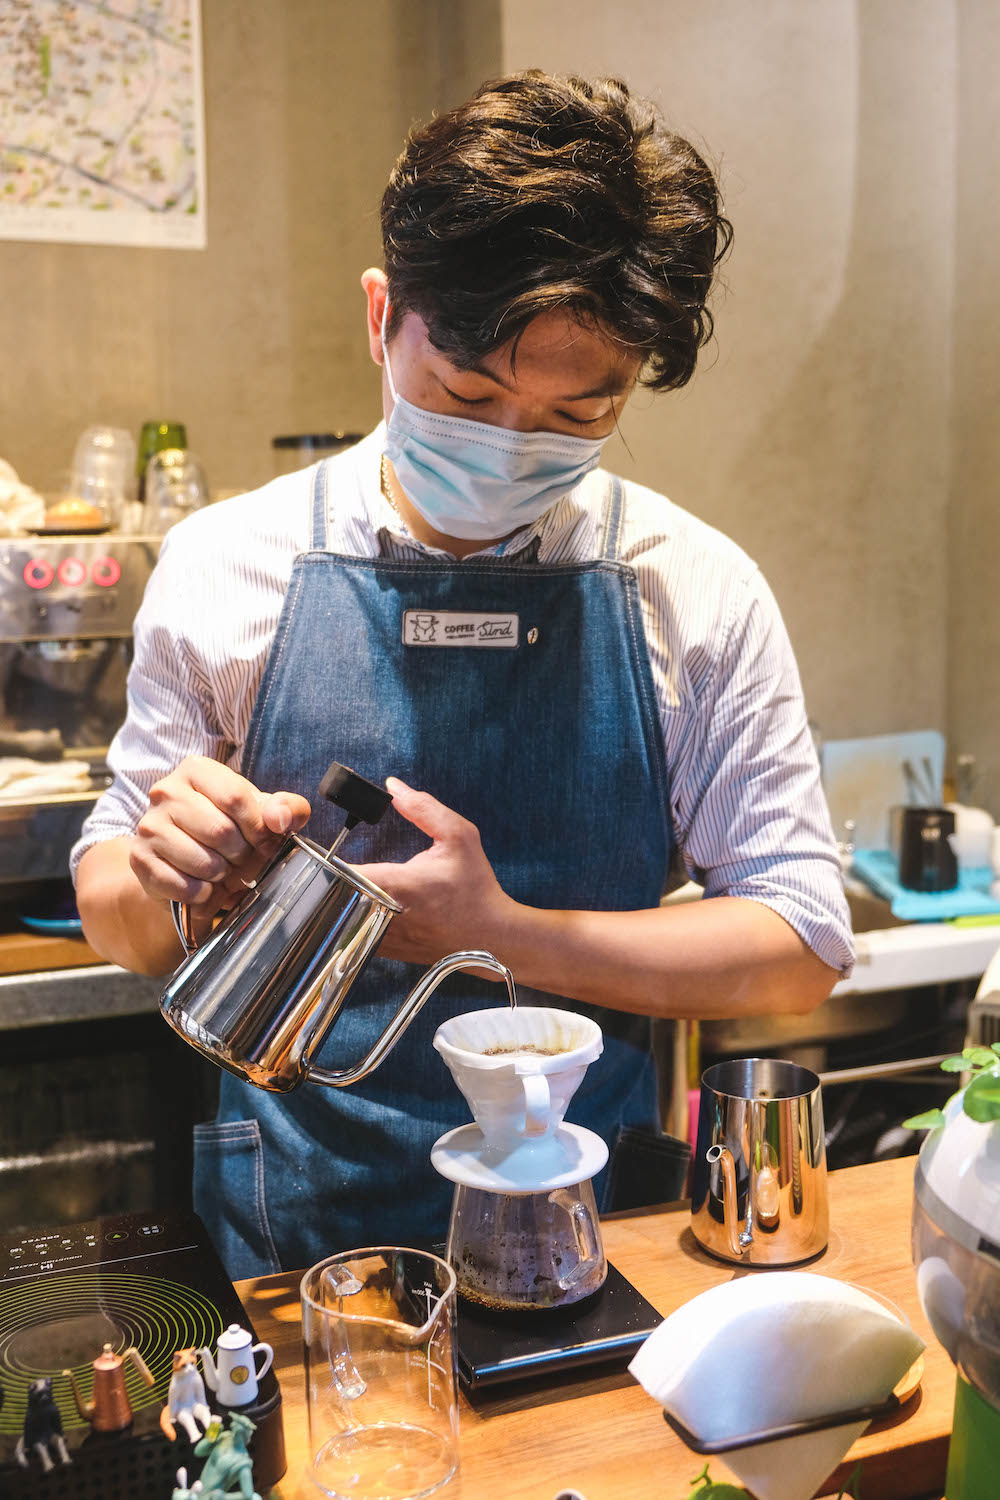 台北忠孝新生「Coffee Sind」專訪：手沖咖啡與多肉植物圍繞的溫馨小空間